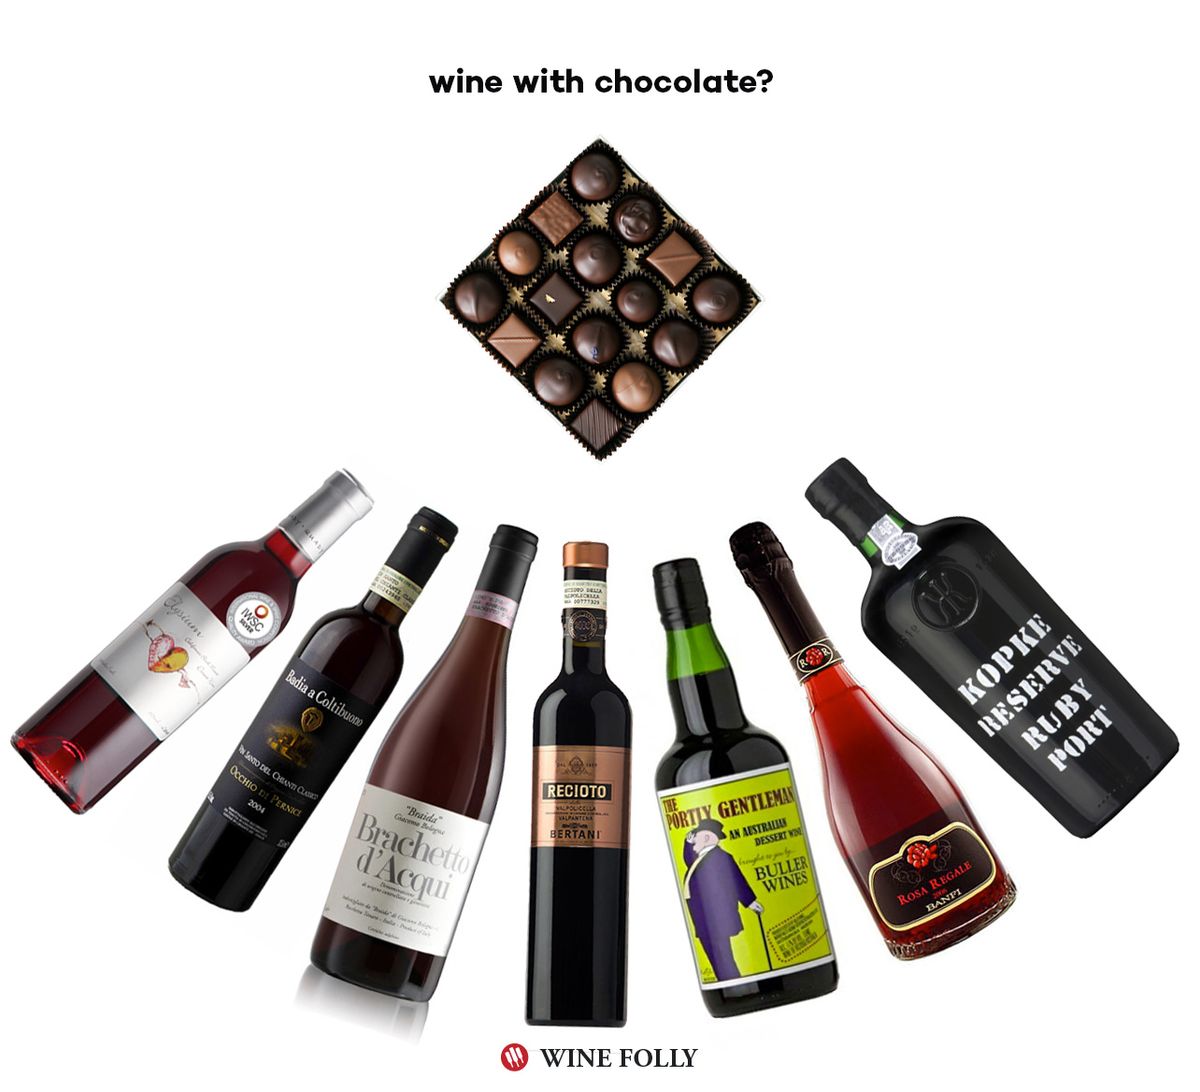 vins-avec-chocolat-recommandations-vin-folie